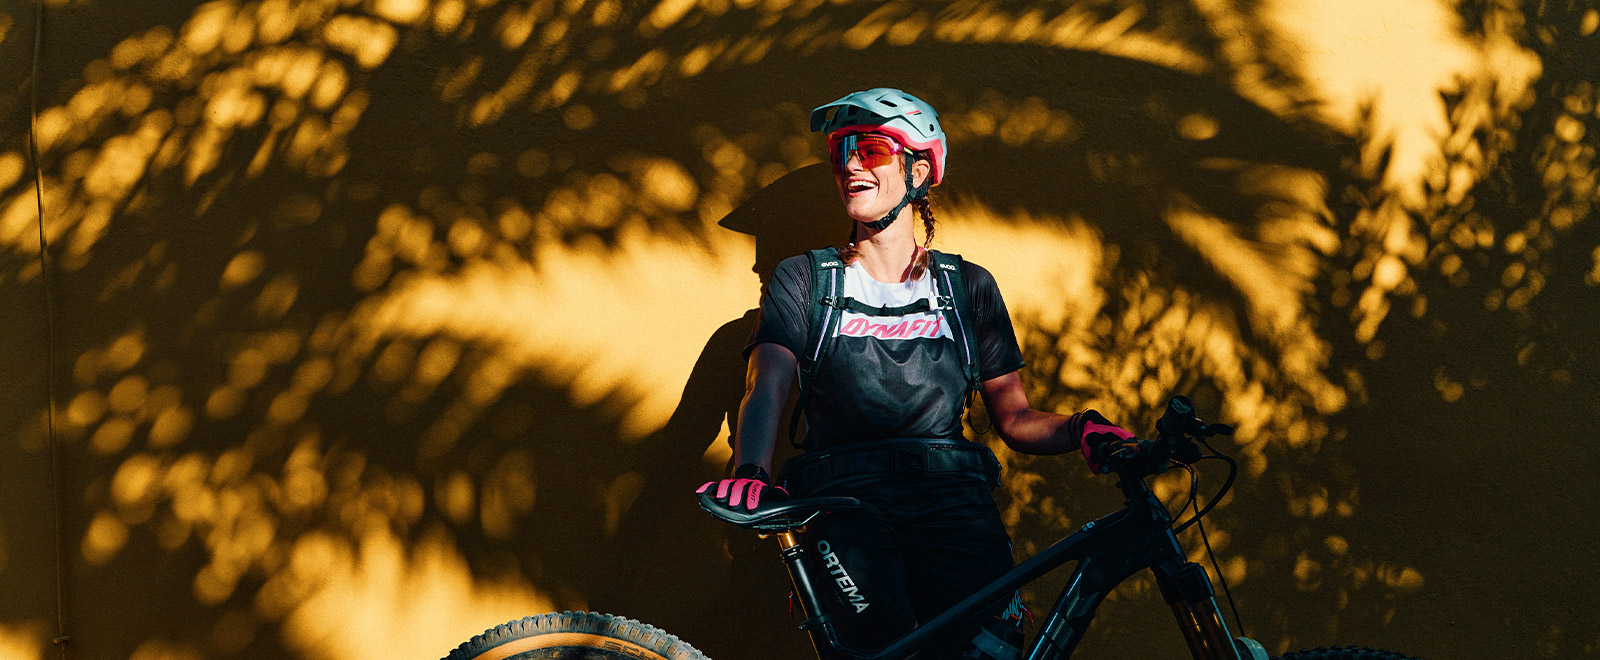 Steffi Marth im Bike-Outfit vor gelber Wand mit Schatten